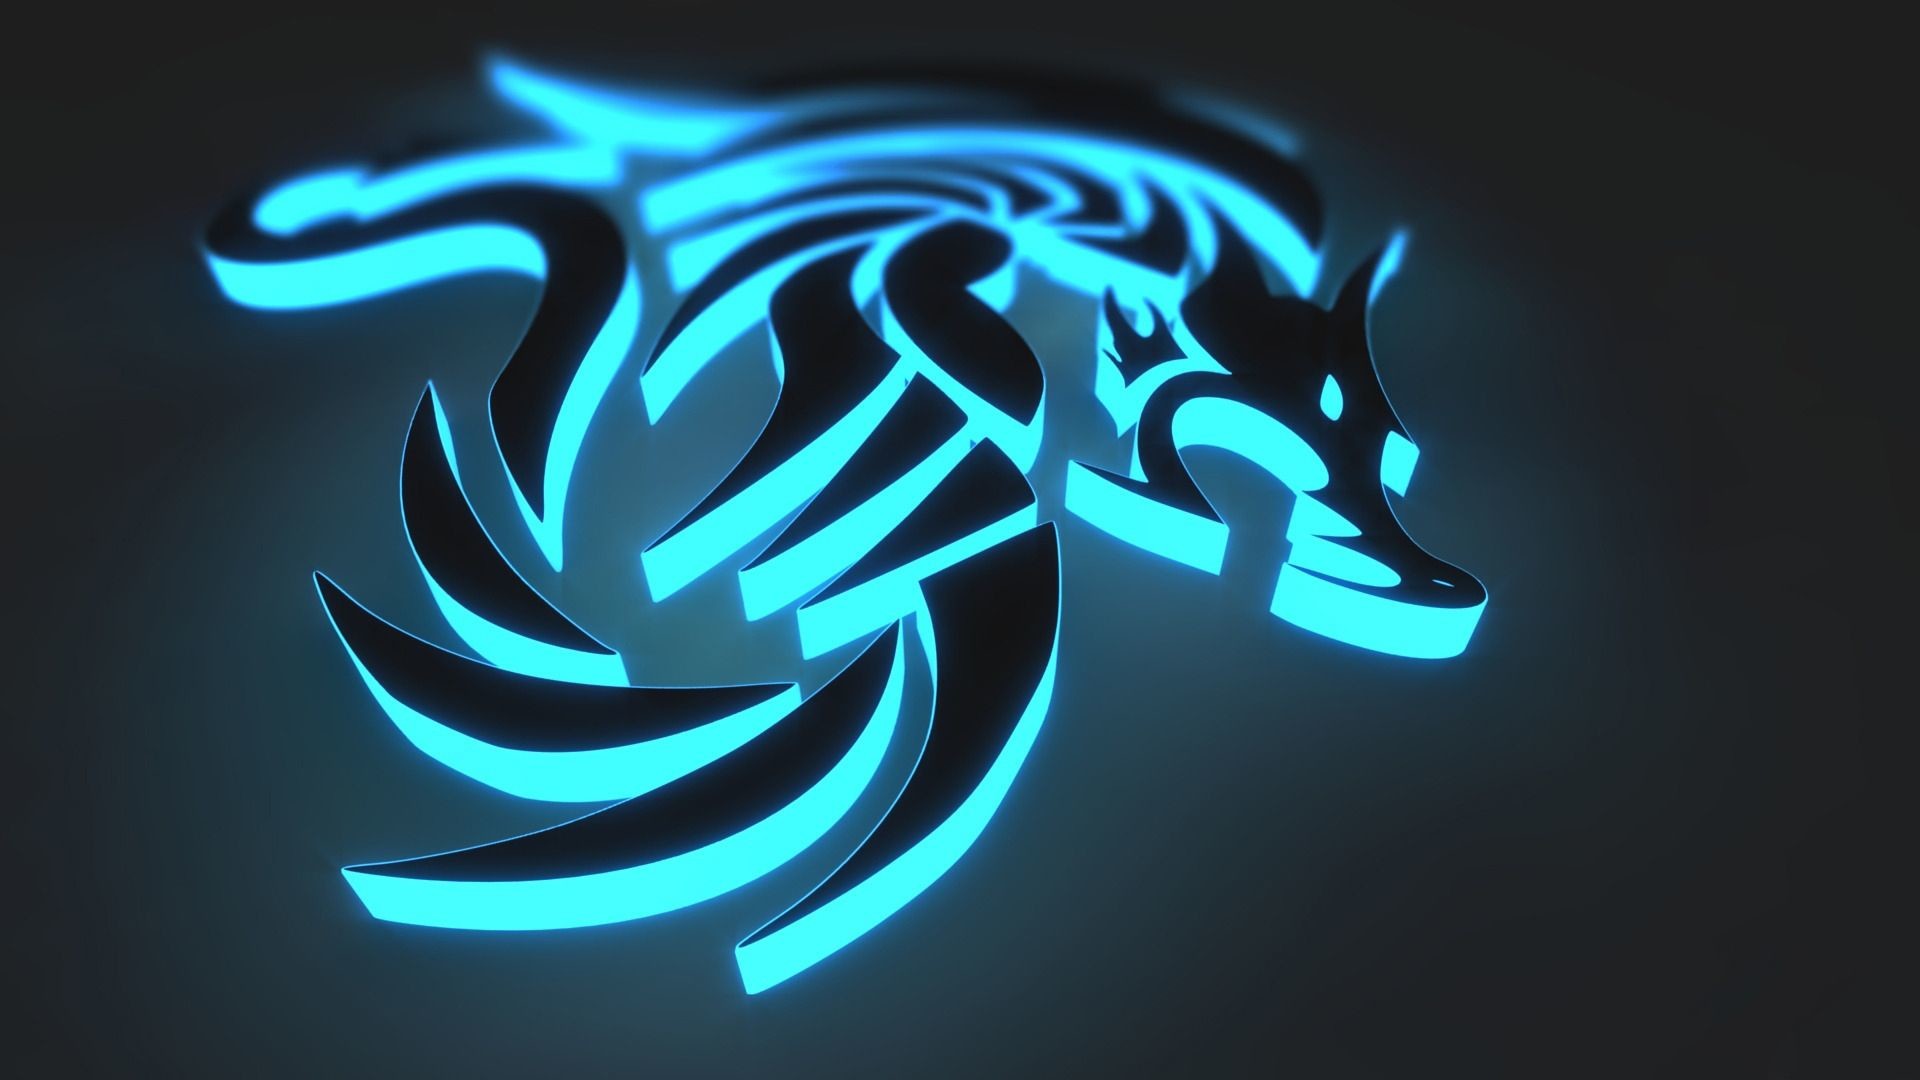 Black And Blue Dragon Emblem Wallpaper